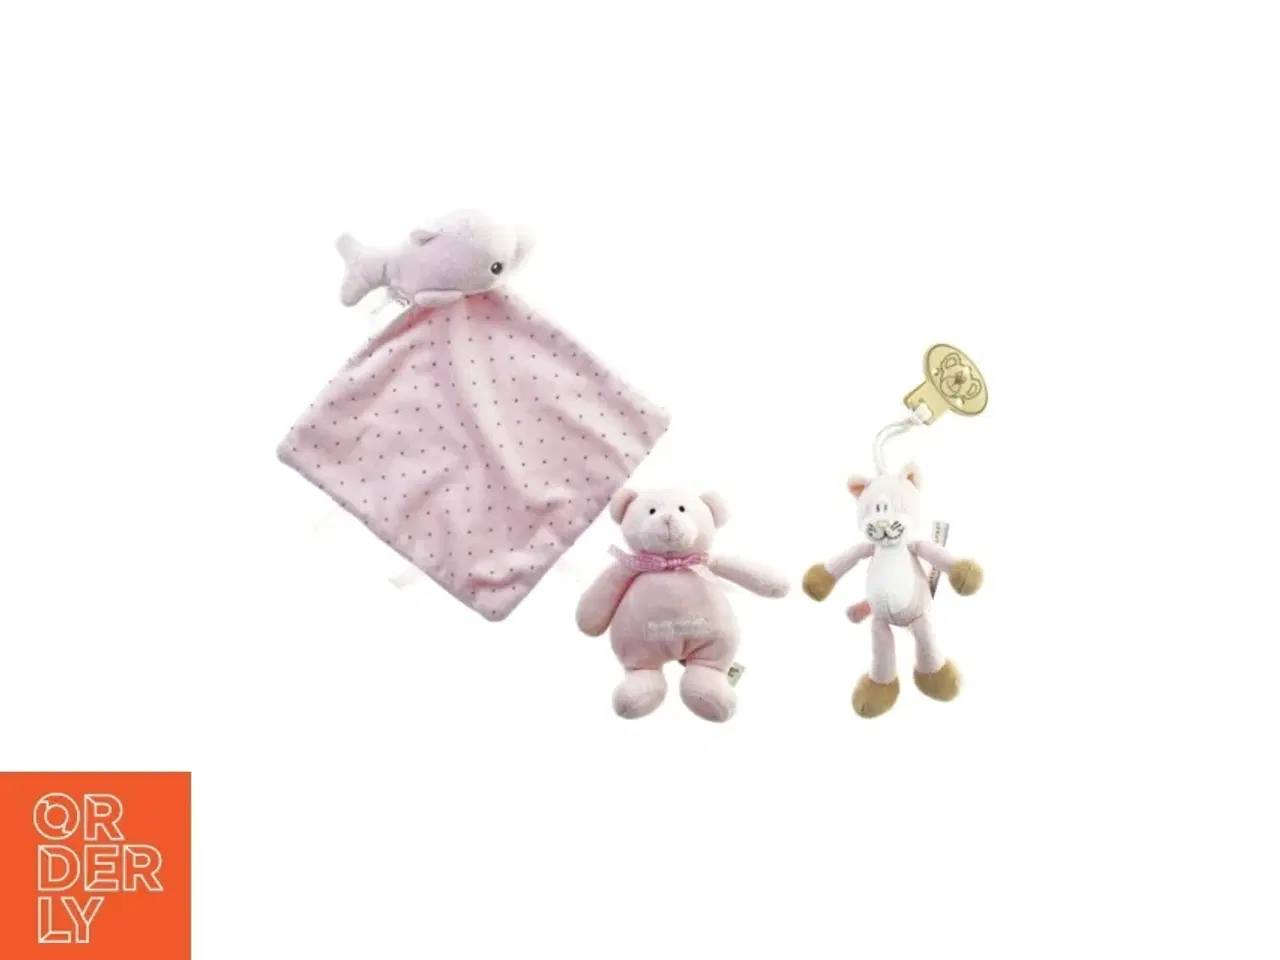 Billede 1 - Nusseklud og små baby bamser fra Nicotoy Og Teddykompagniet